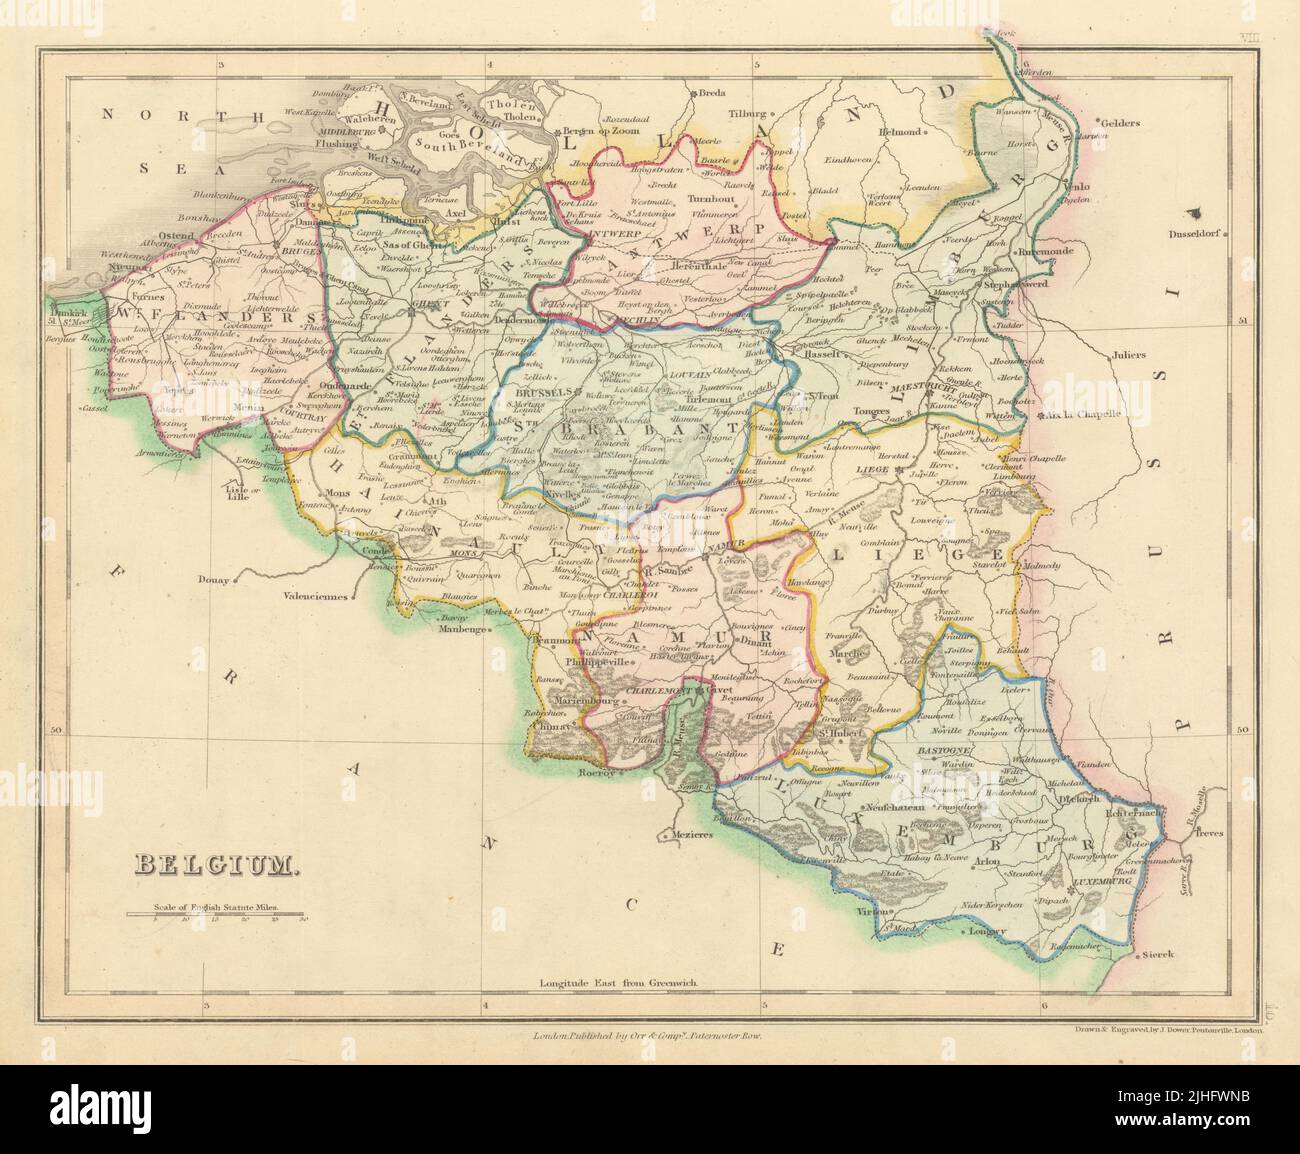 Bélgica en las provincias por John Dower. Incluye el mapa de Limburg holandés 1845 antiguo Foto de stock